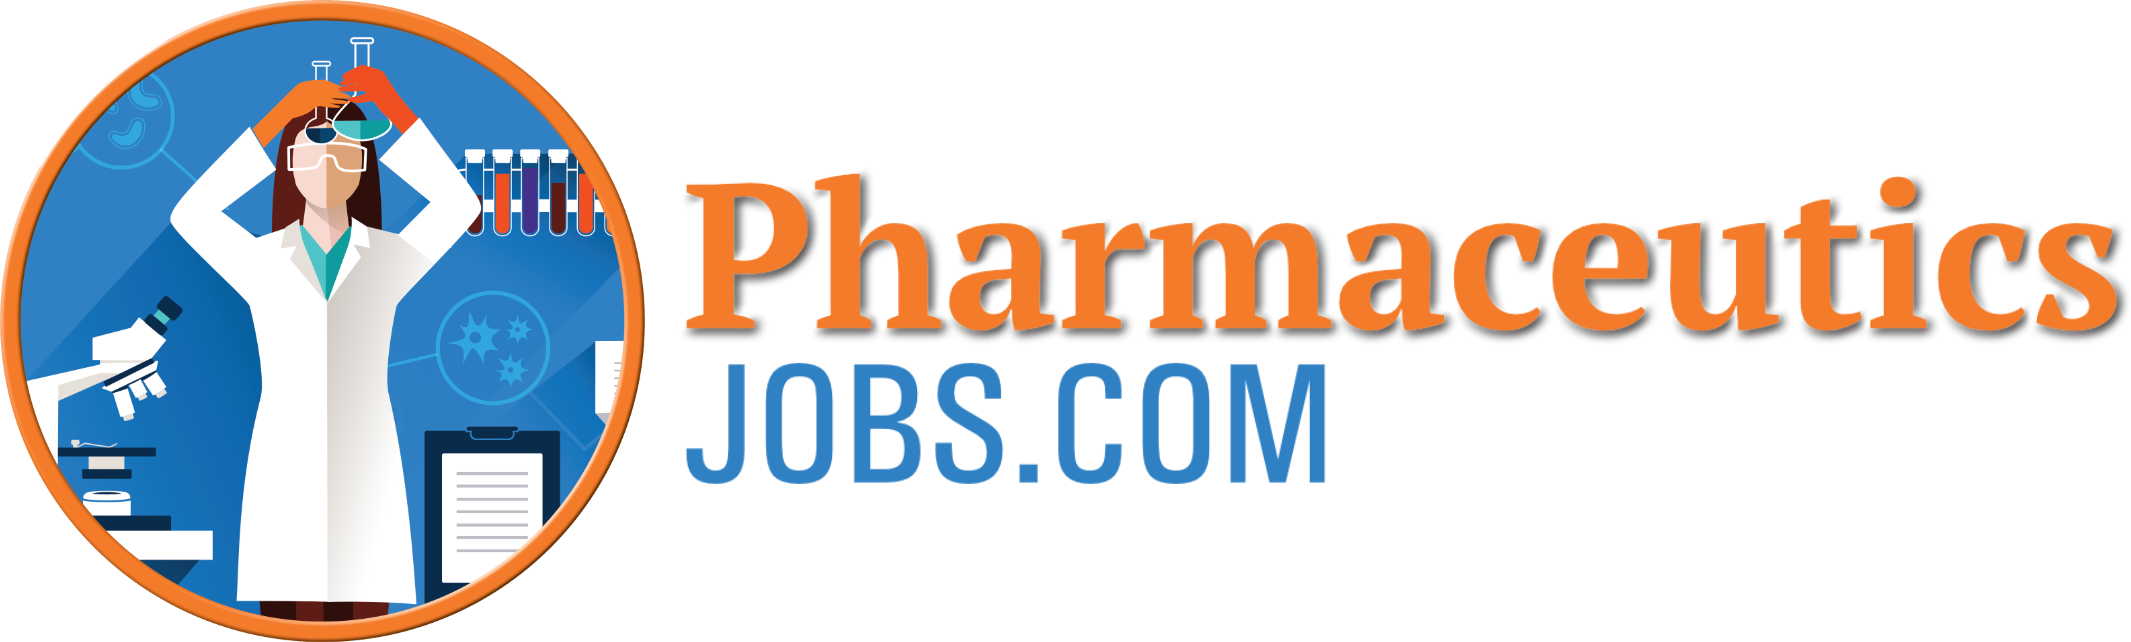 PharmaceuticsJobs.com